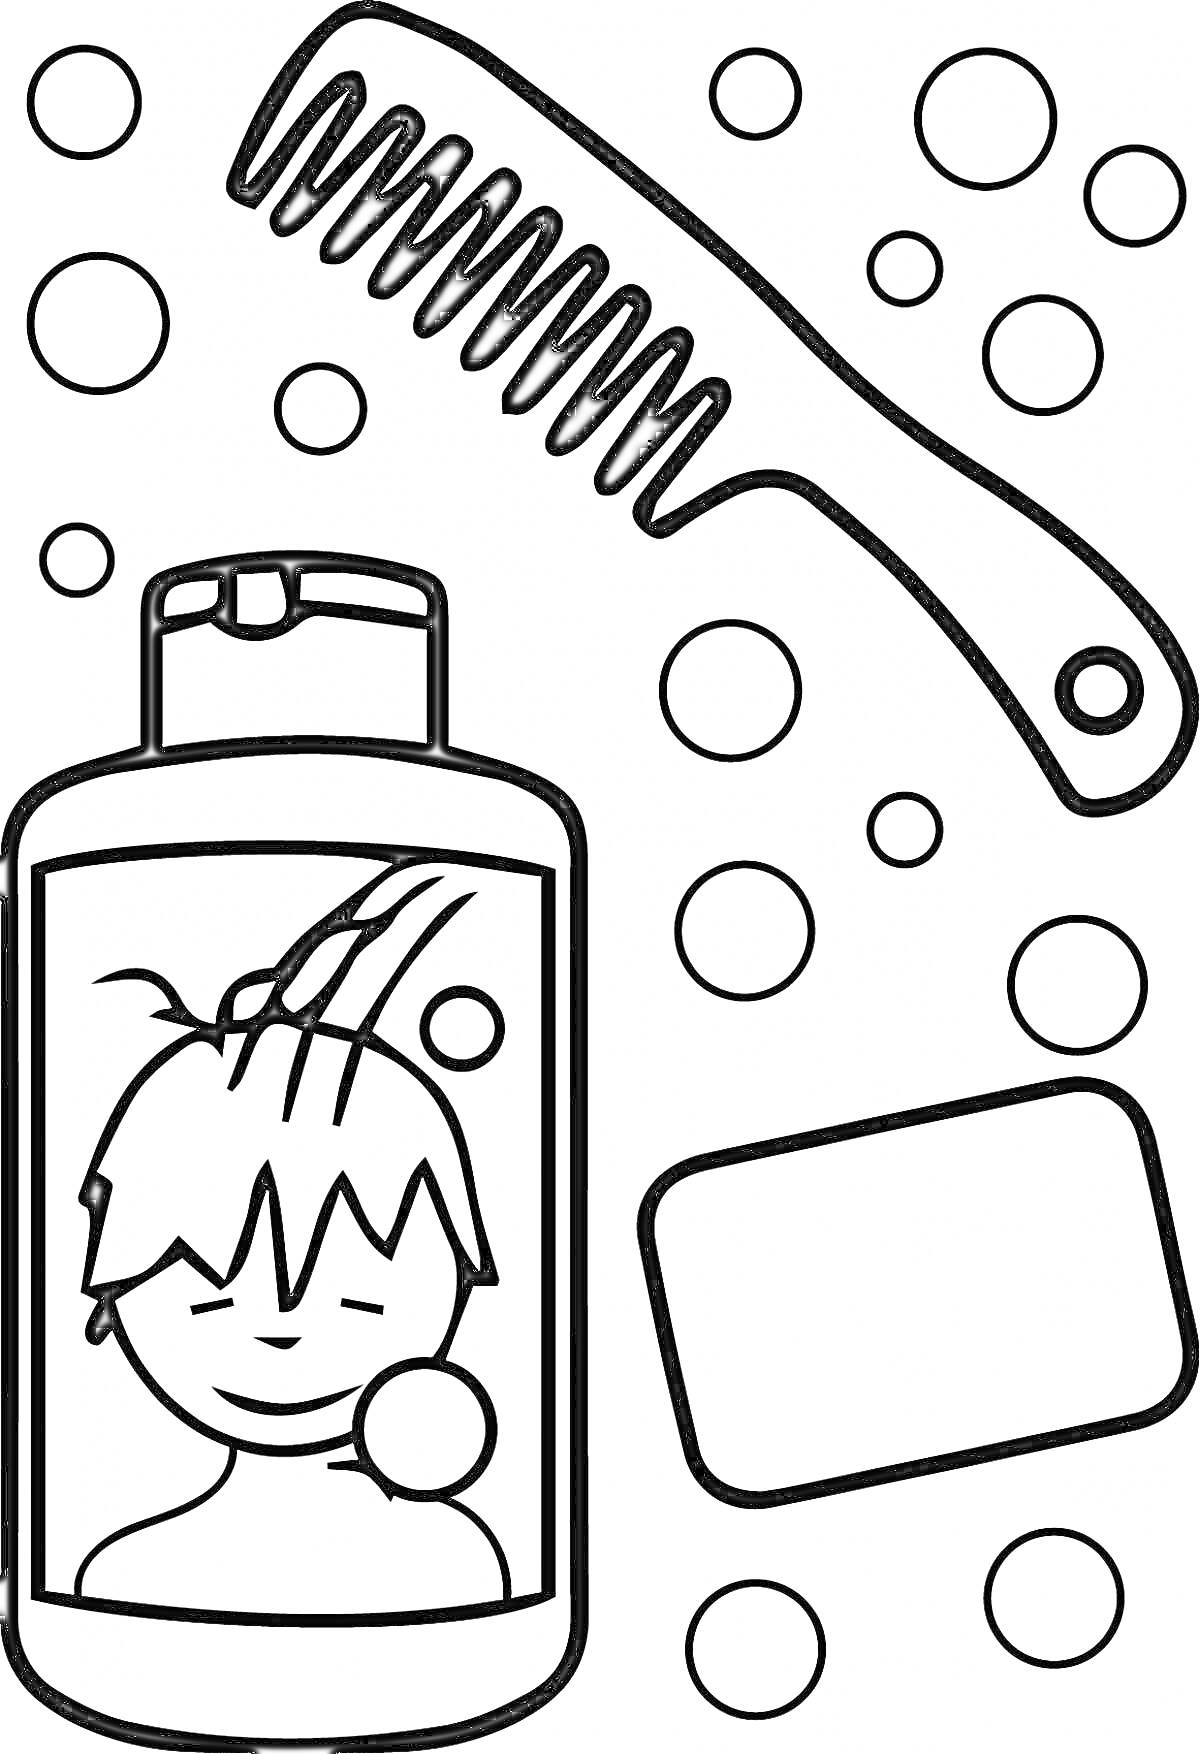 Шампунь с изображением мальчика, мыло, расчёска и пузыри